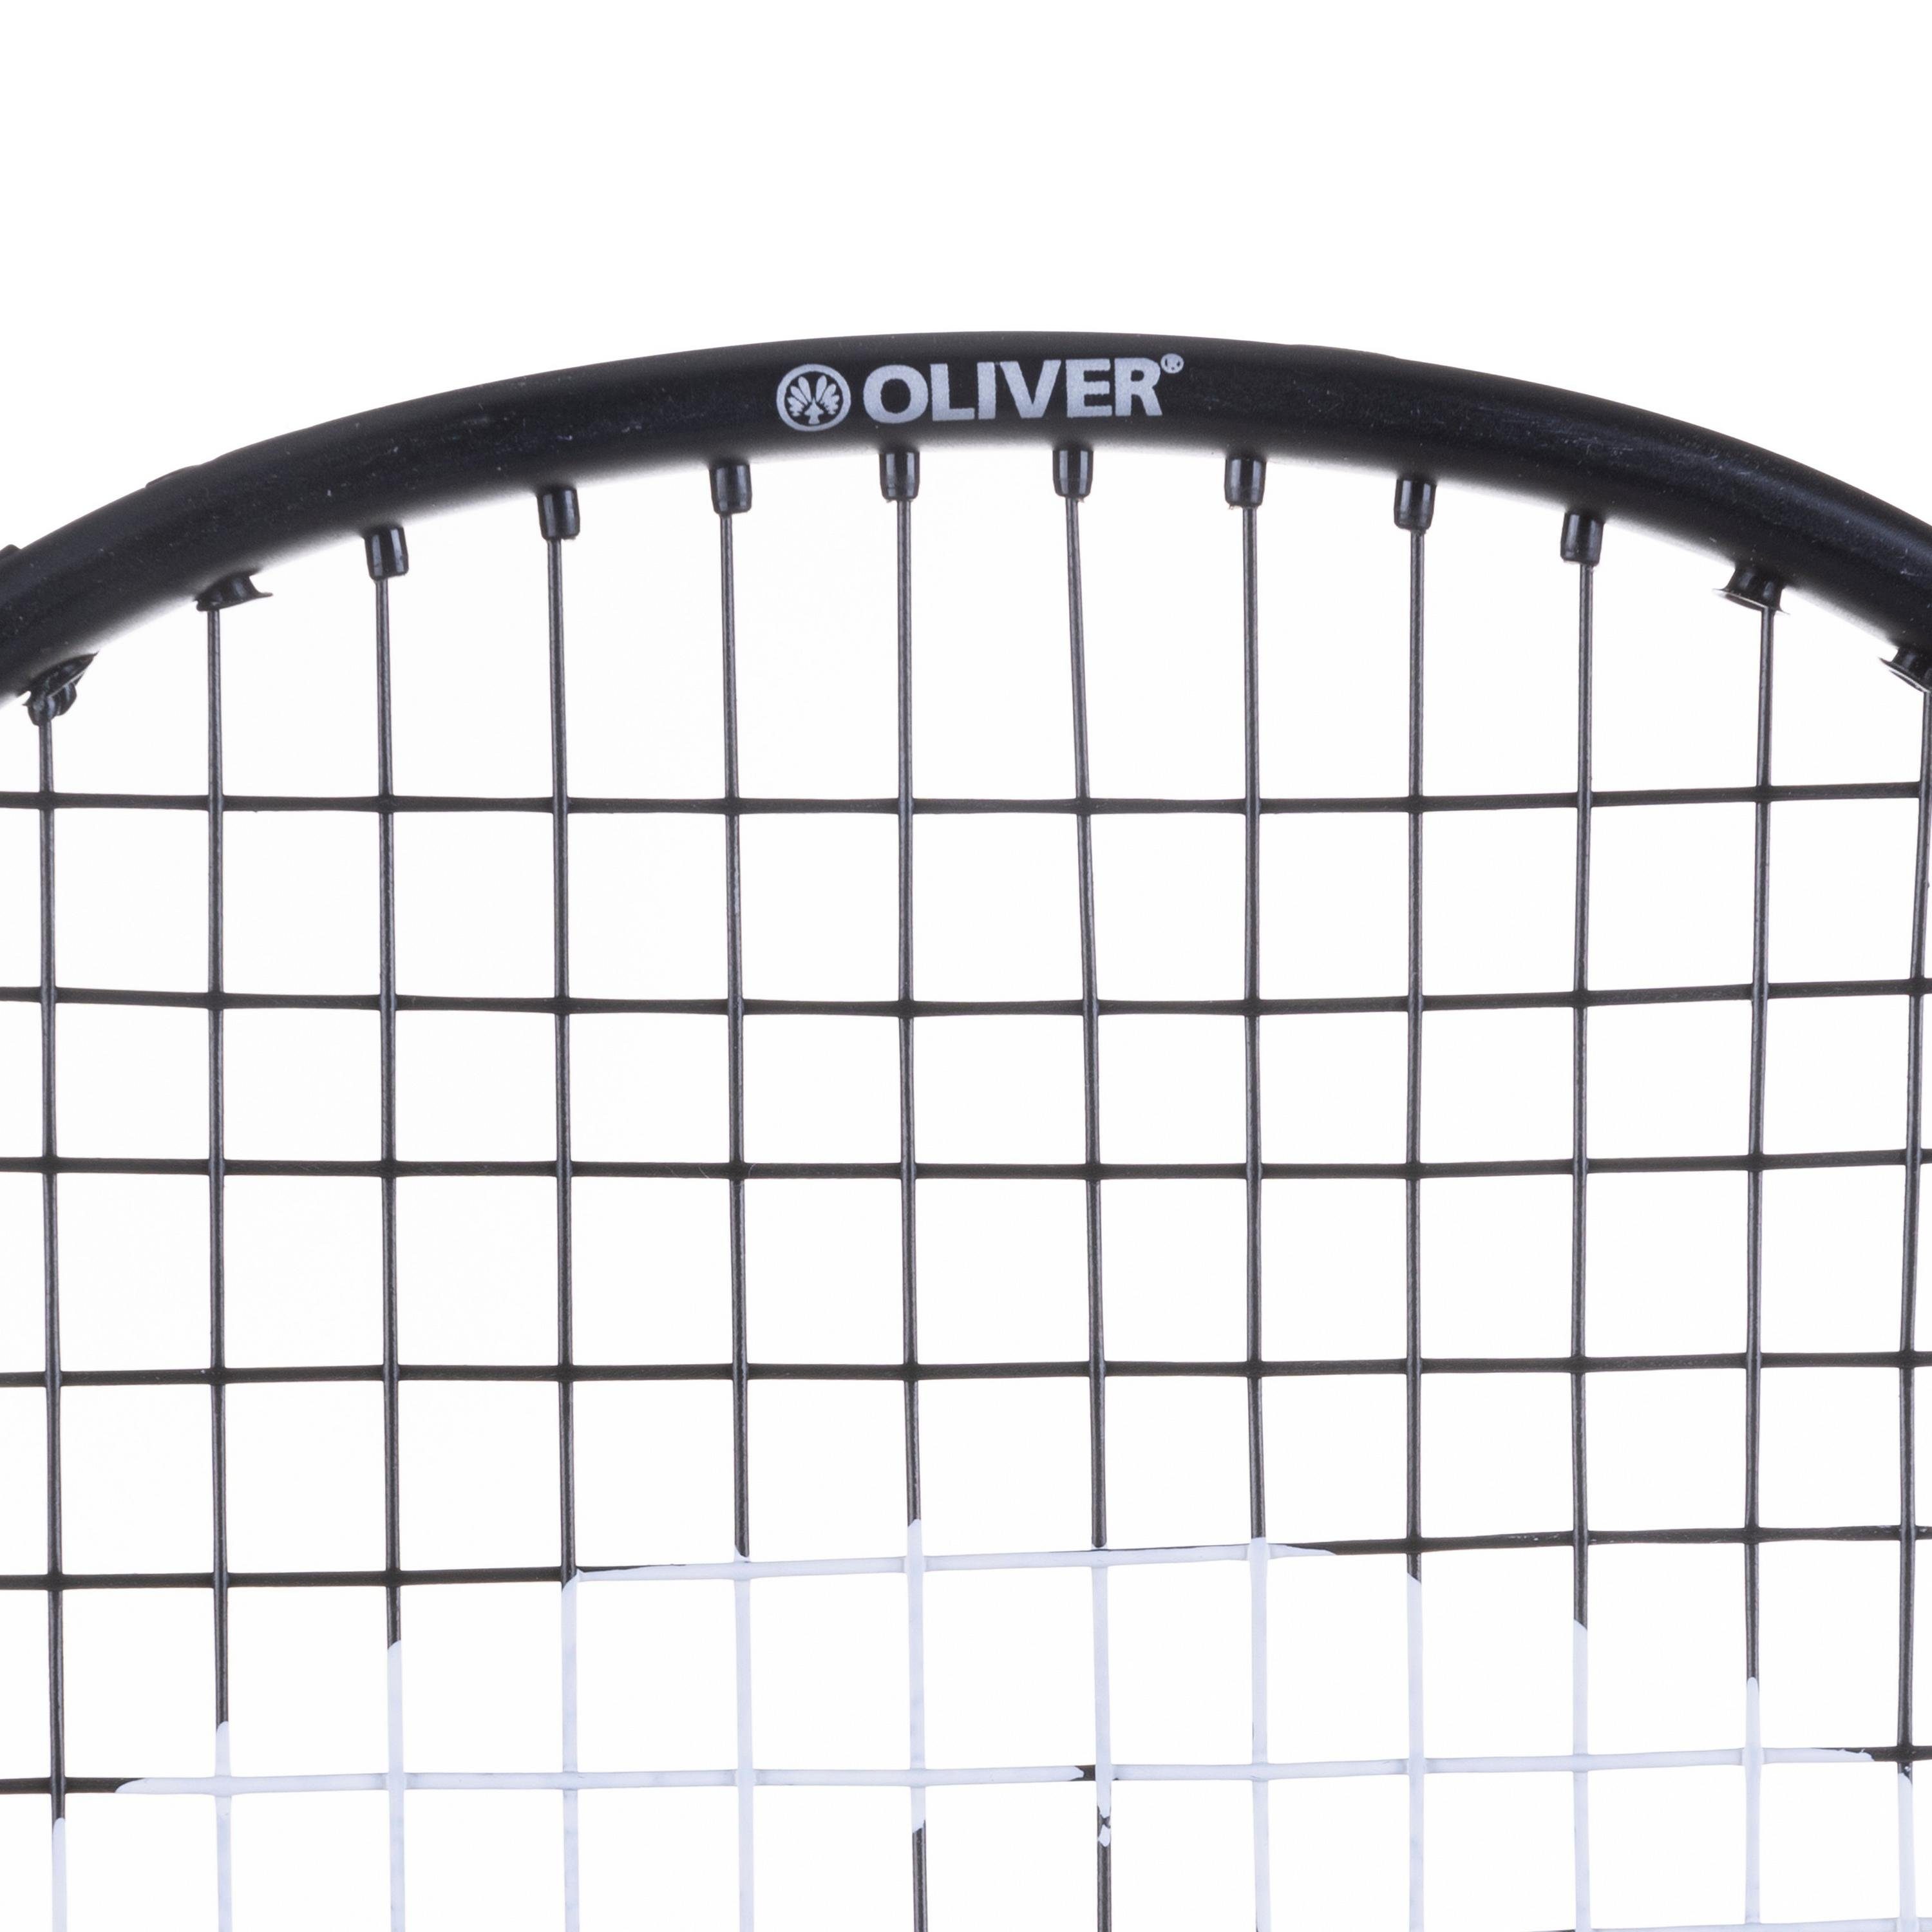 SMASH 6 Oliver FETTER Badmintonschläger